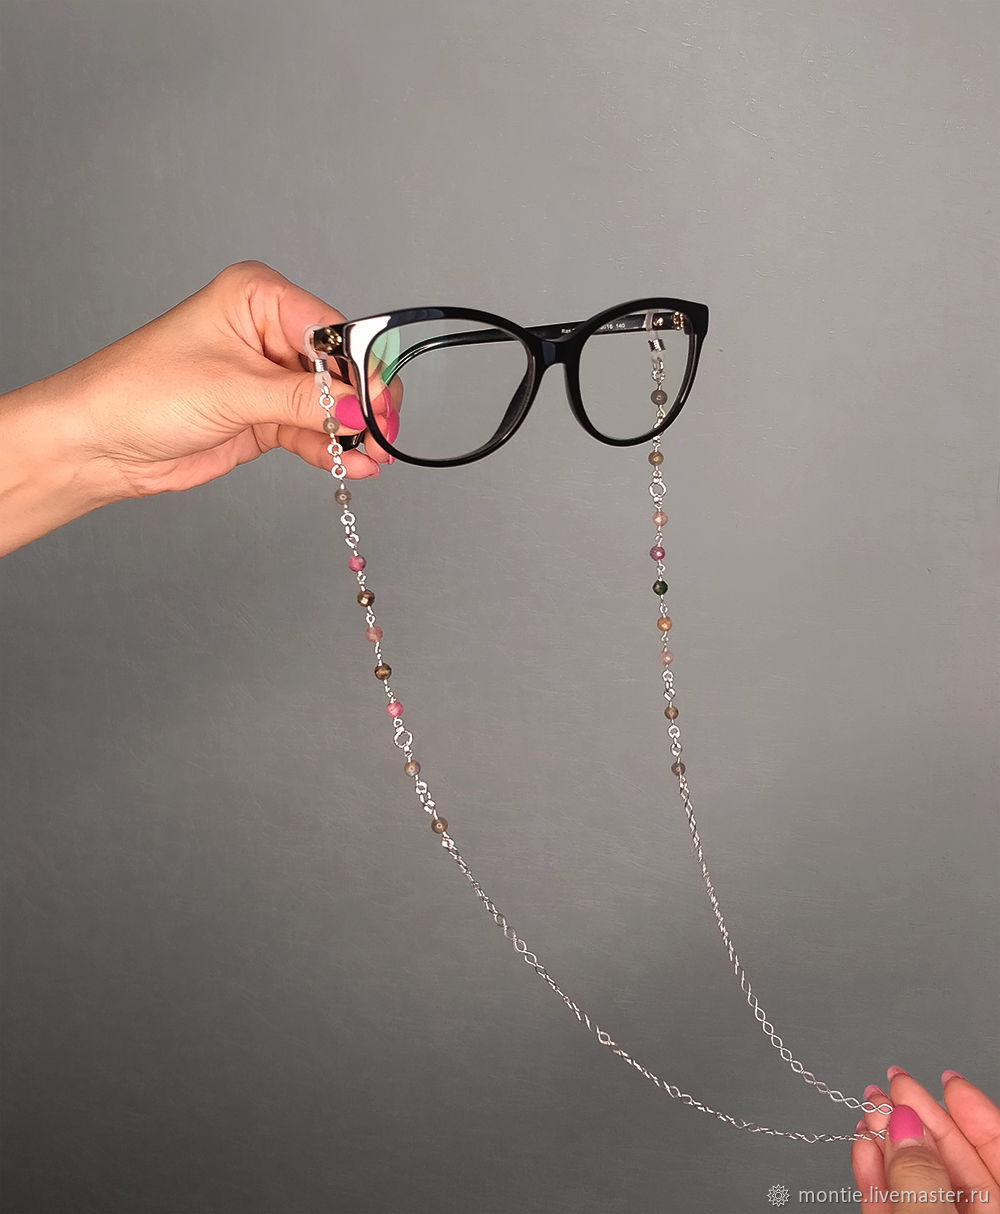 Как правильно носить цепочку для очков для зрения